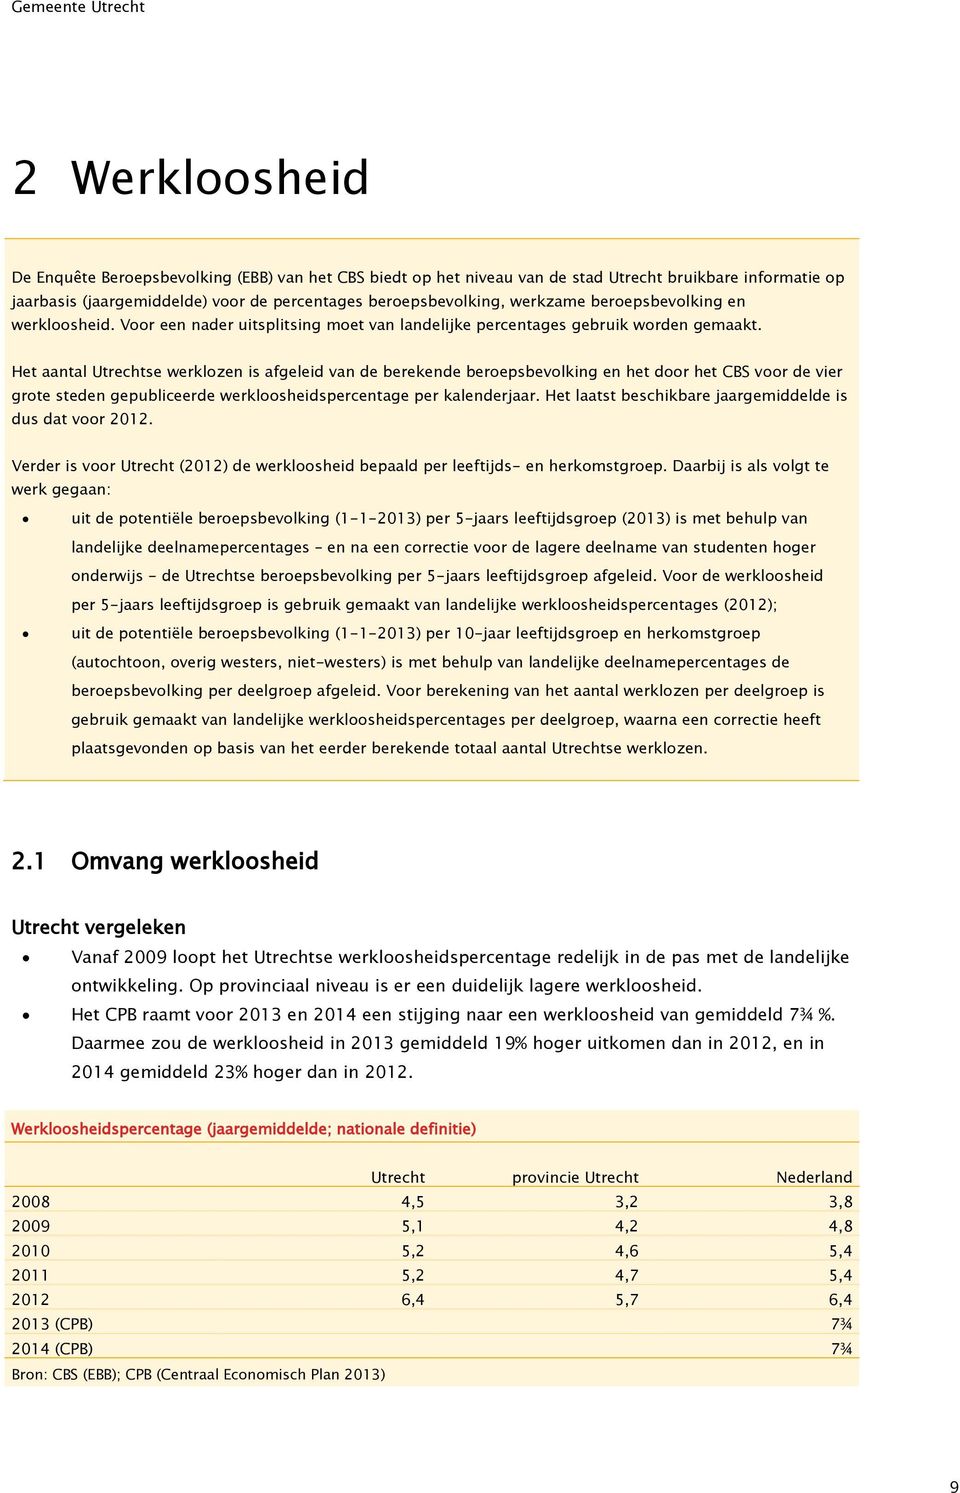 Het aantal Utrechtse werklozen is afgeleid van de berekende beroepsbevolking en het door het CBS voor de vier grote steden gepubliceerde werkloosheidspercentage per kalenderjaar.